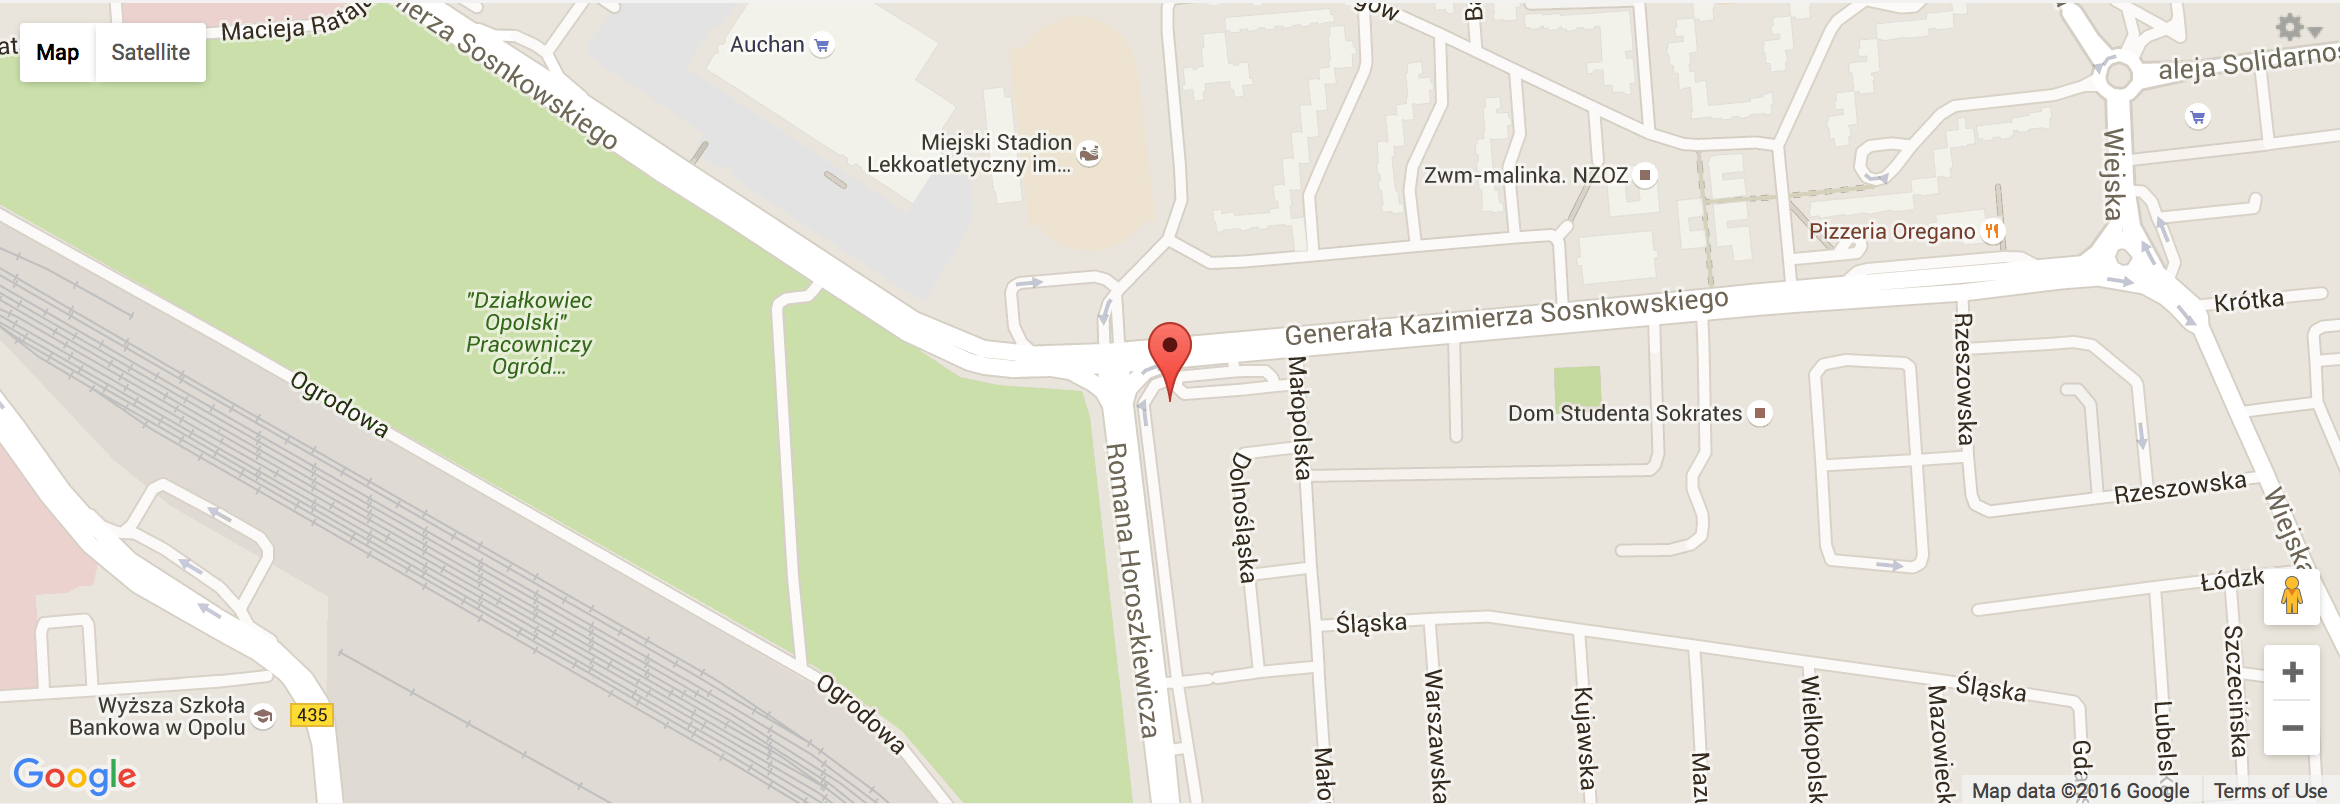 Biuro Stowarzyszenia Aglomeracja Opolska - Localization on map